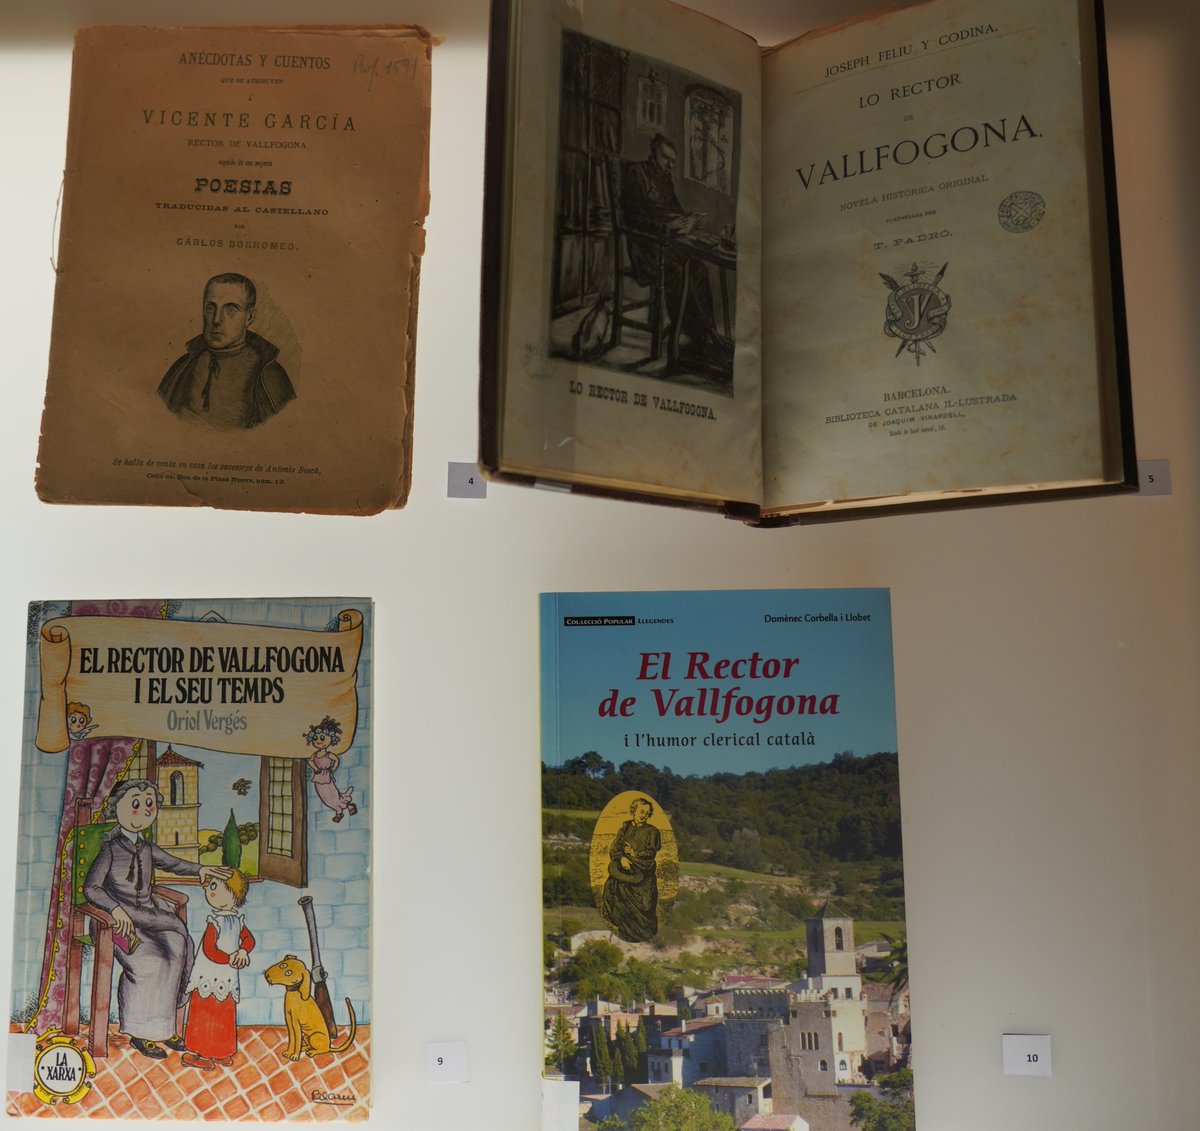 📚📚Fins al 31 d'octubre, podeu visitar l'exposició 'Vicent Garcia. Rector de Vallfogona' a la @BiblioCatalunya. 

📚📚Comissionada per @AlbertRossich, mostra tota mena de publicacions sobre el poeta des de la seva mort: manuscrits, llibres, articles... Imperdible! @AnyRector